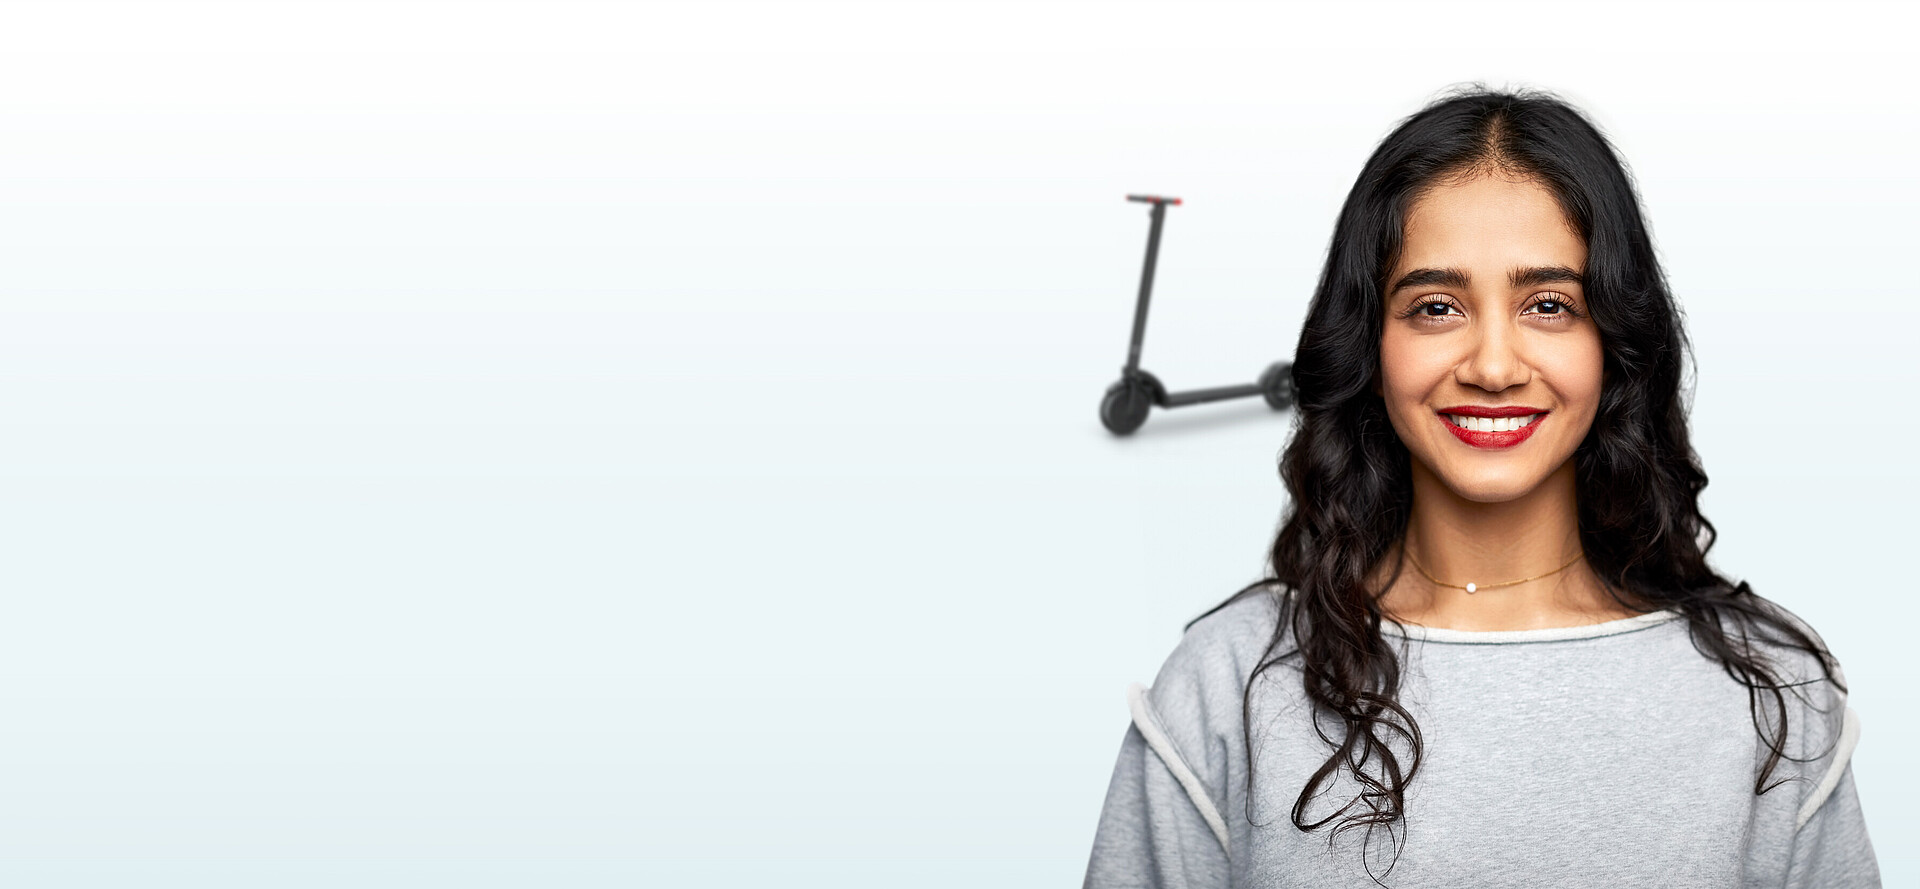 Junge lächelnde Frau mit einem E-scooter im Hintergrund